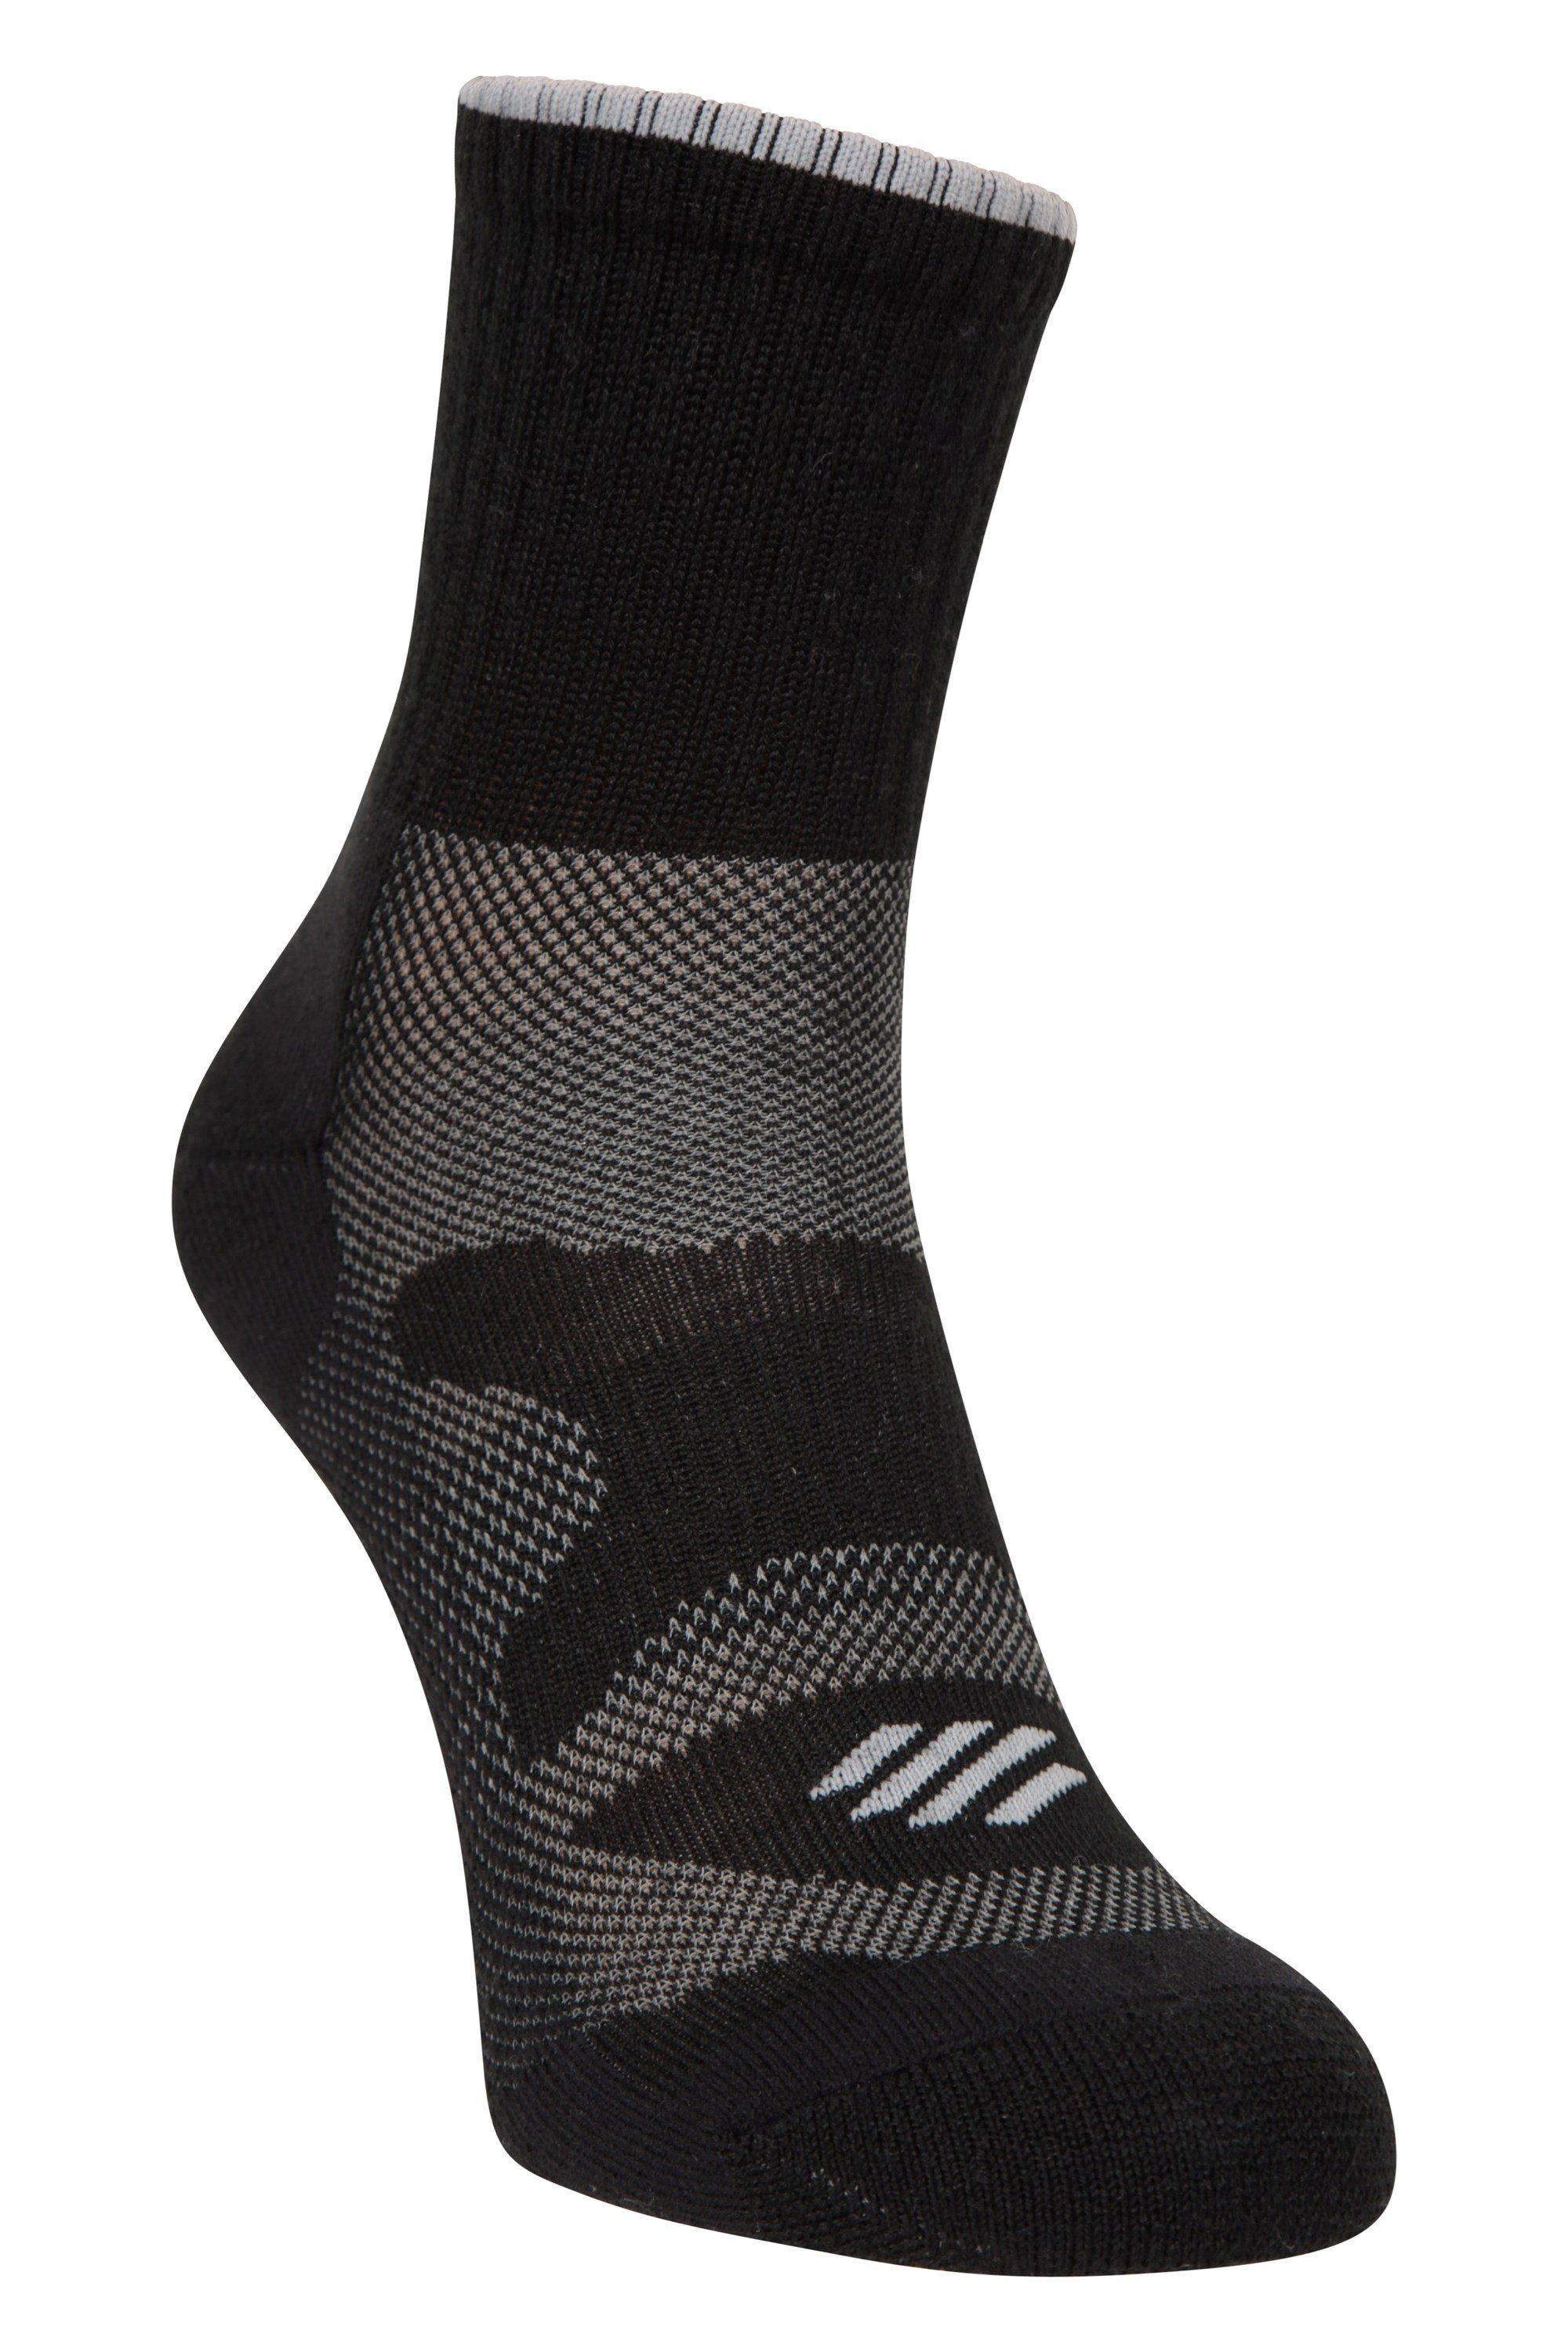 Merino Explorer Ankle Length Socks Soft Stretchy Socks